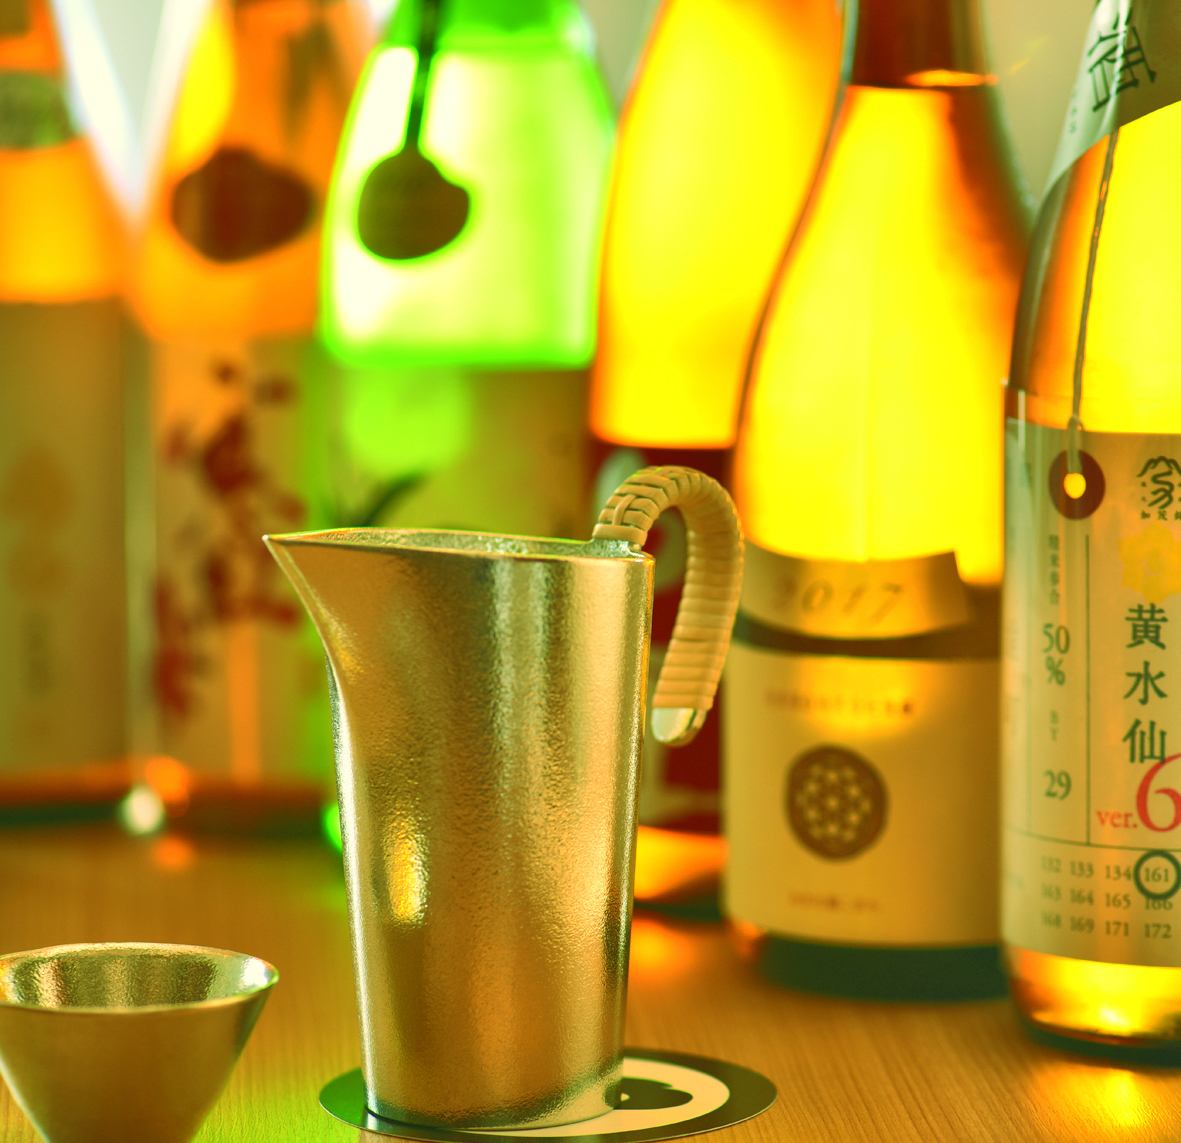 我們提供各種精心挑選的日本酒。